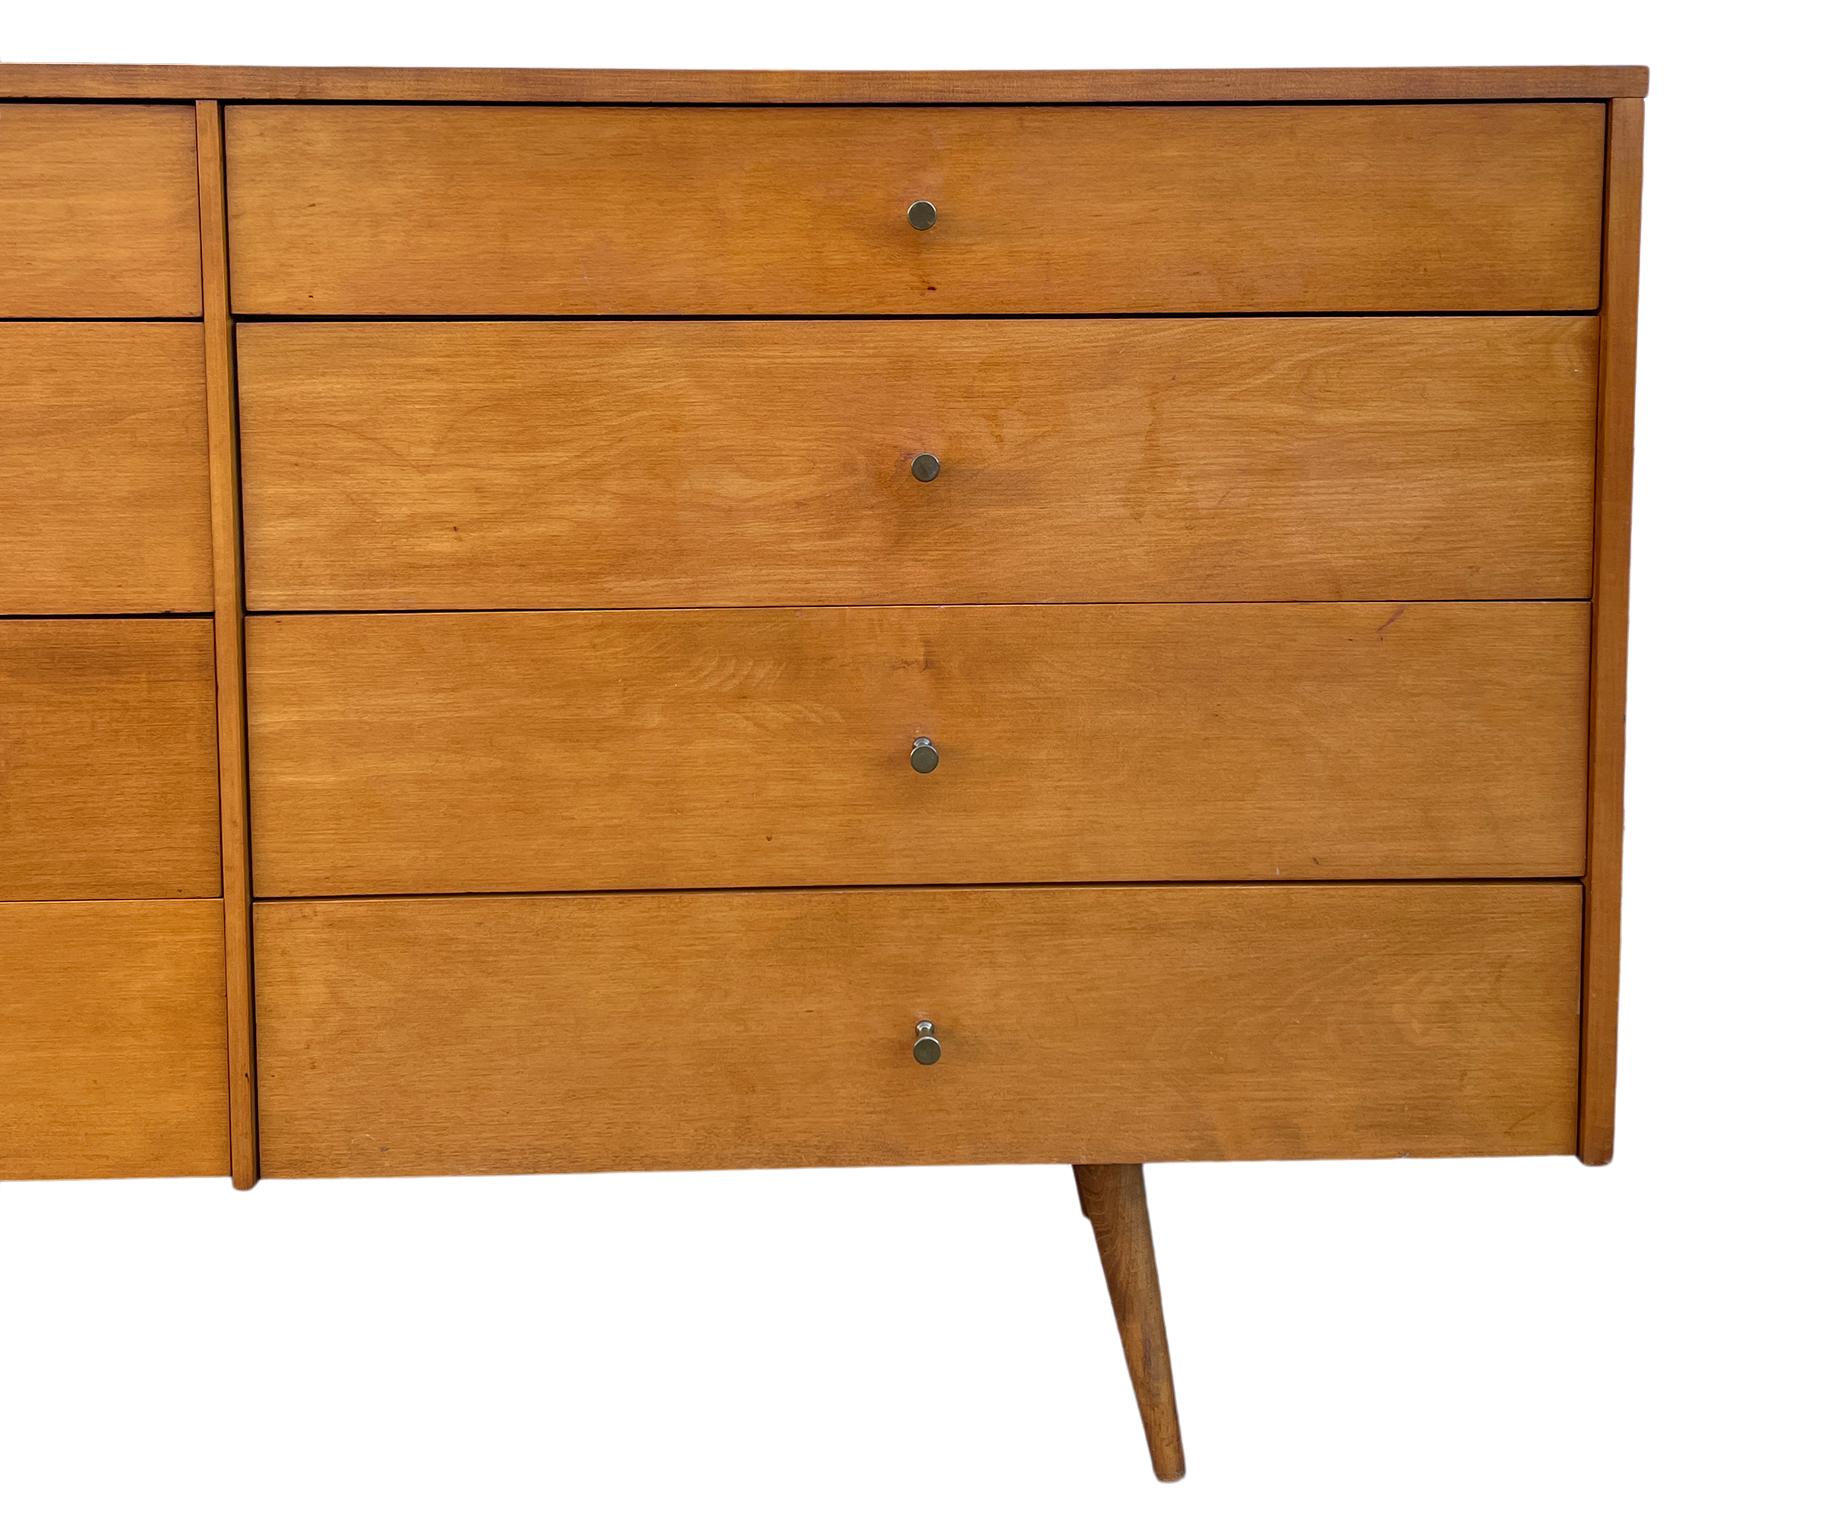 20th Century Midcentury Paul McCobb 8-Drawer Dresser Credenza #1507 Maple Brass Blonde Finish